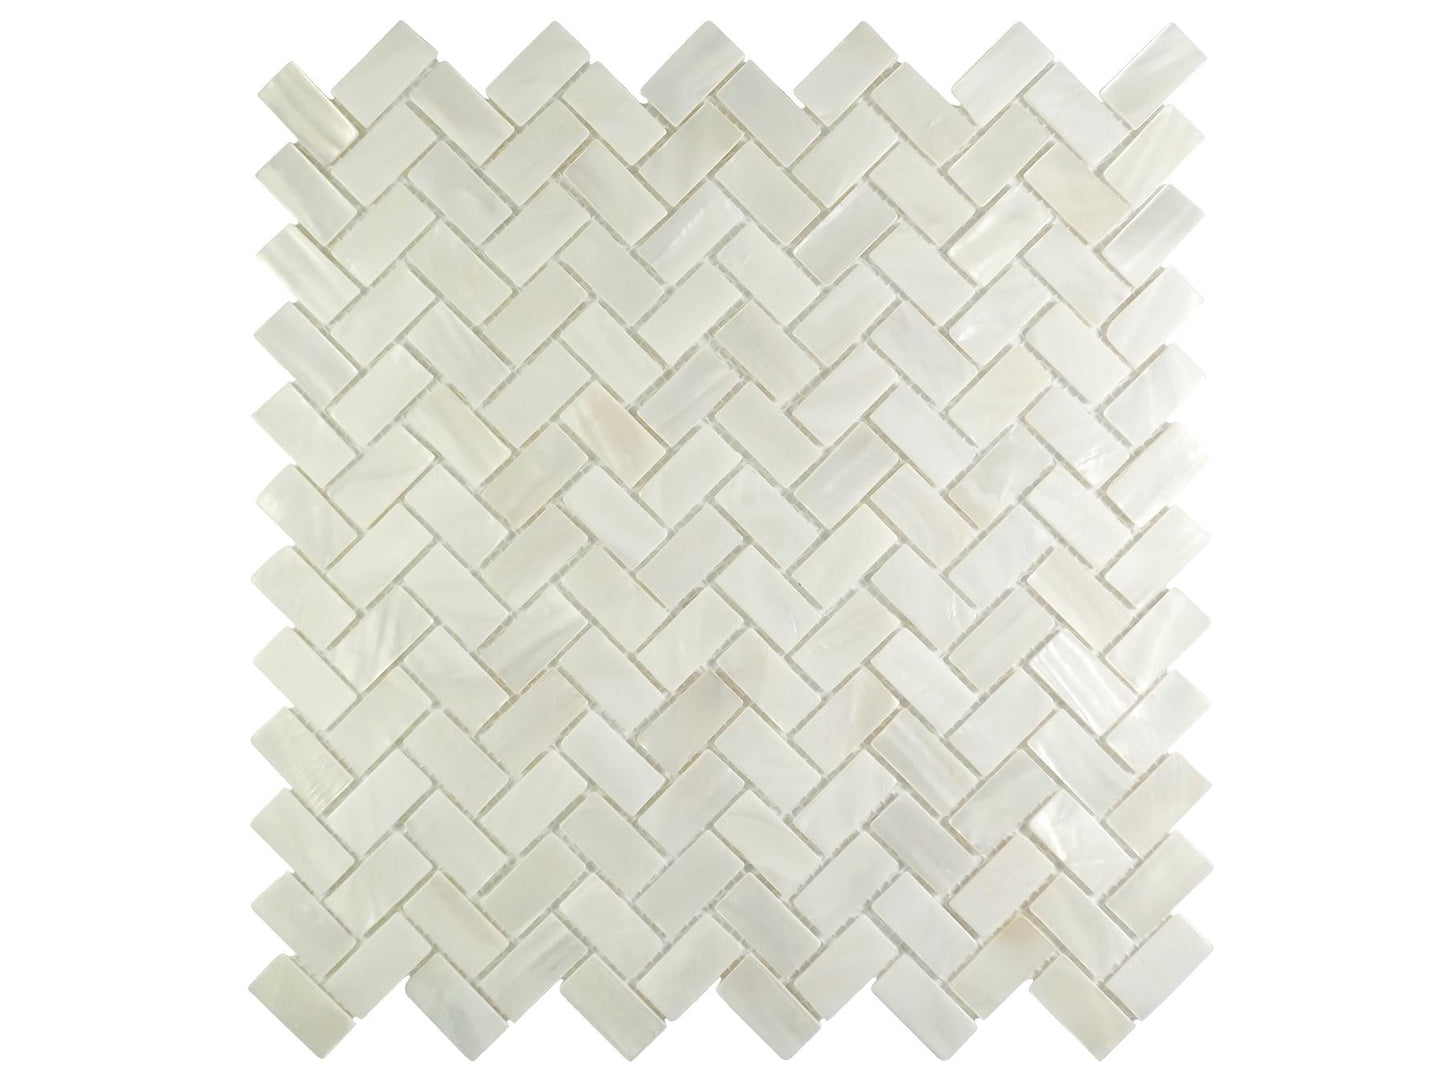 Incudo White Herringbone Mosaic Mother of Pearl Tile - 270x280x2mm (10.6x11.02x0.08")